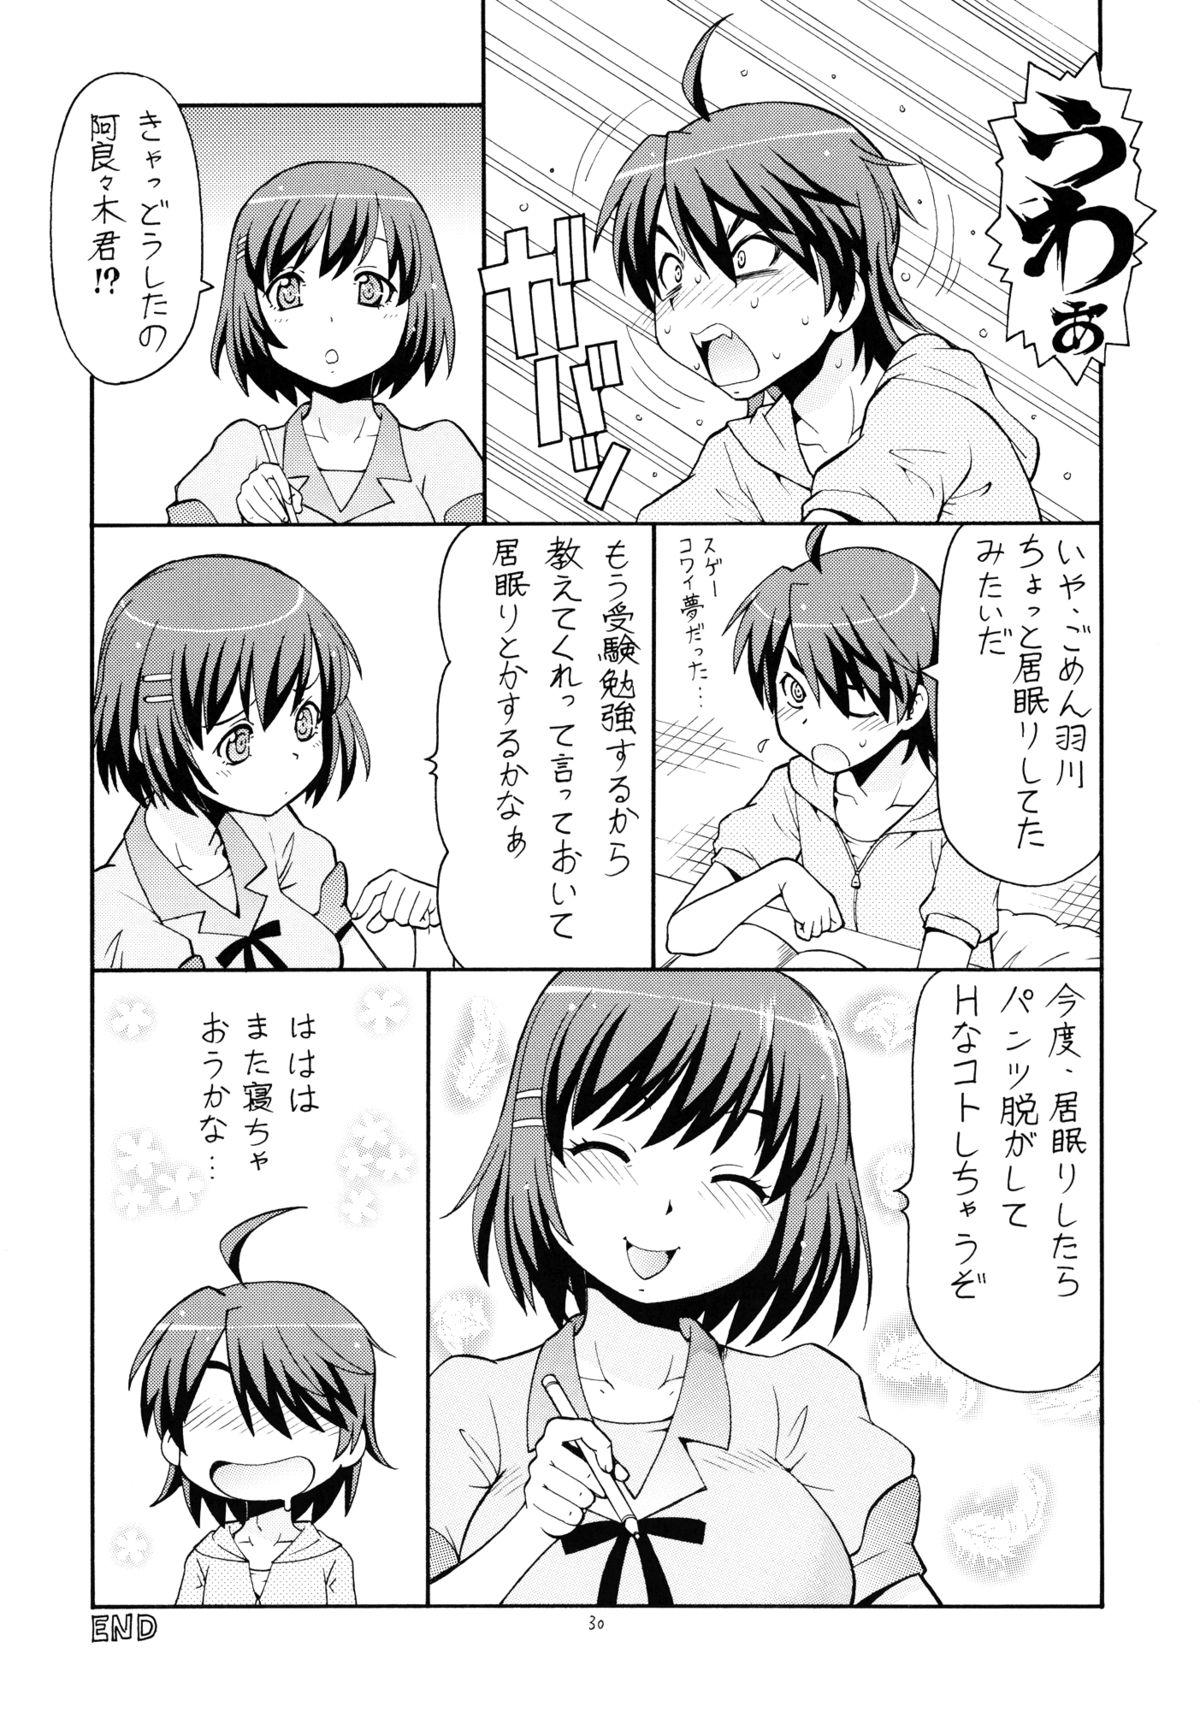 Pija Hito ni Hakanai to Kaite "Araragi" to Yomu 5&6 - Bakemonogatari Transex - Page 31